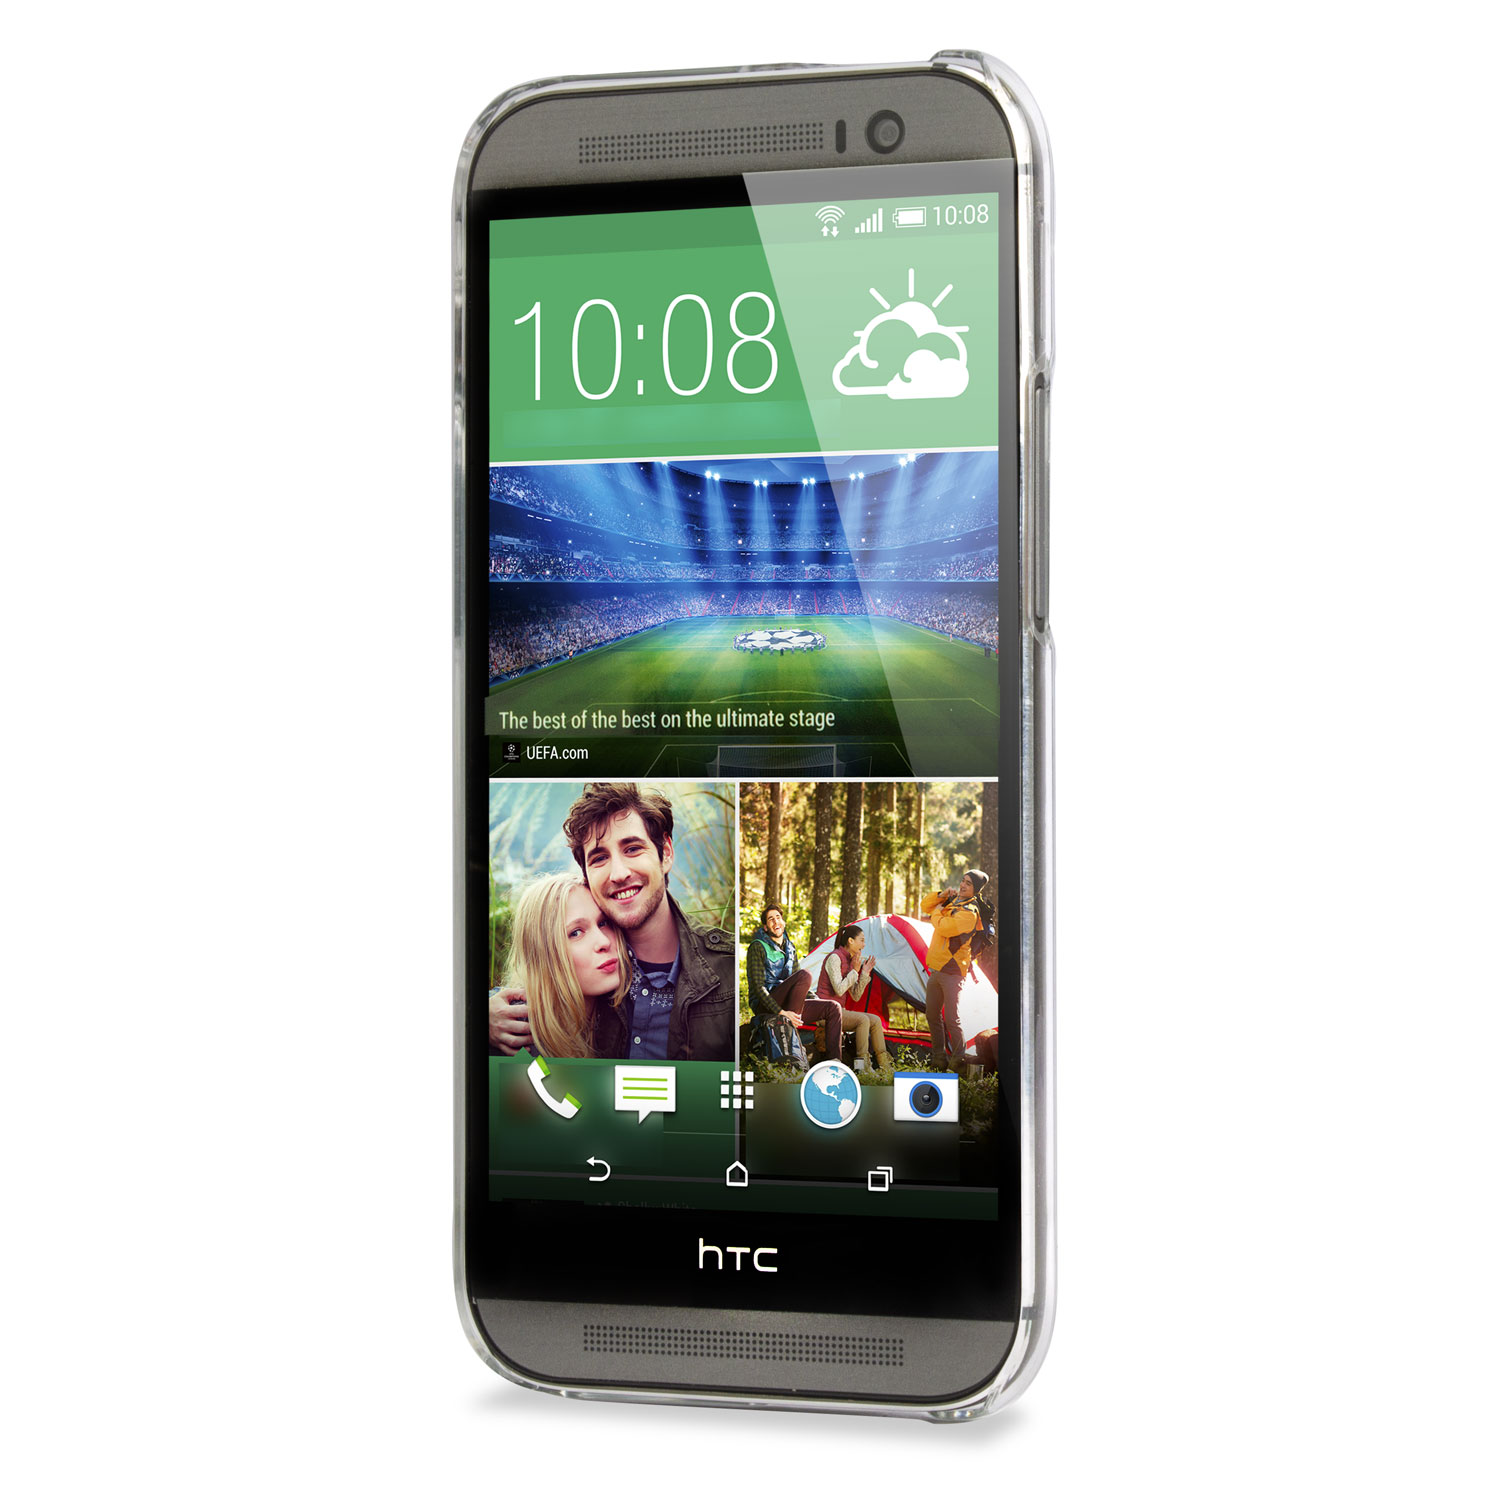 Funda HTC One M8 de policarbonato 100% transparente